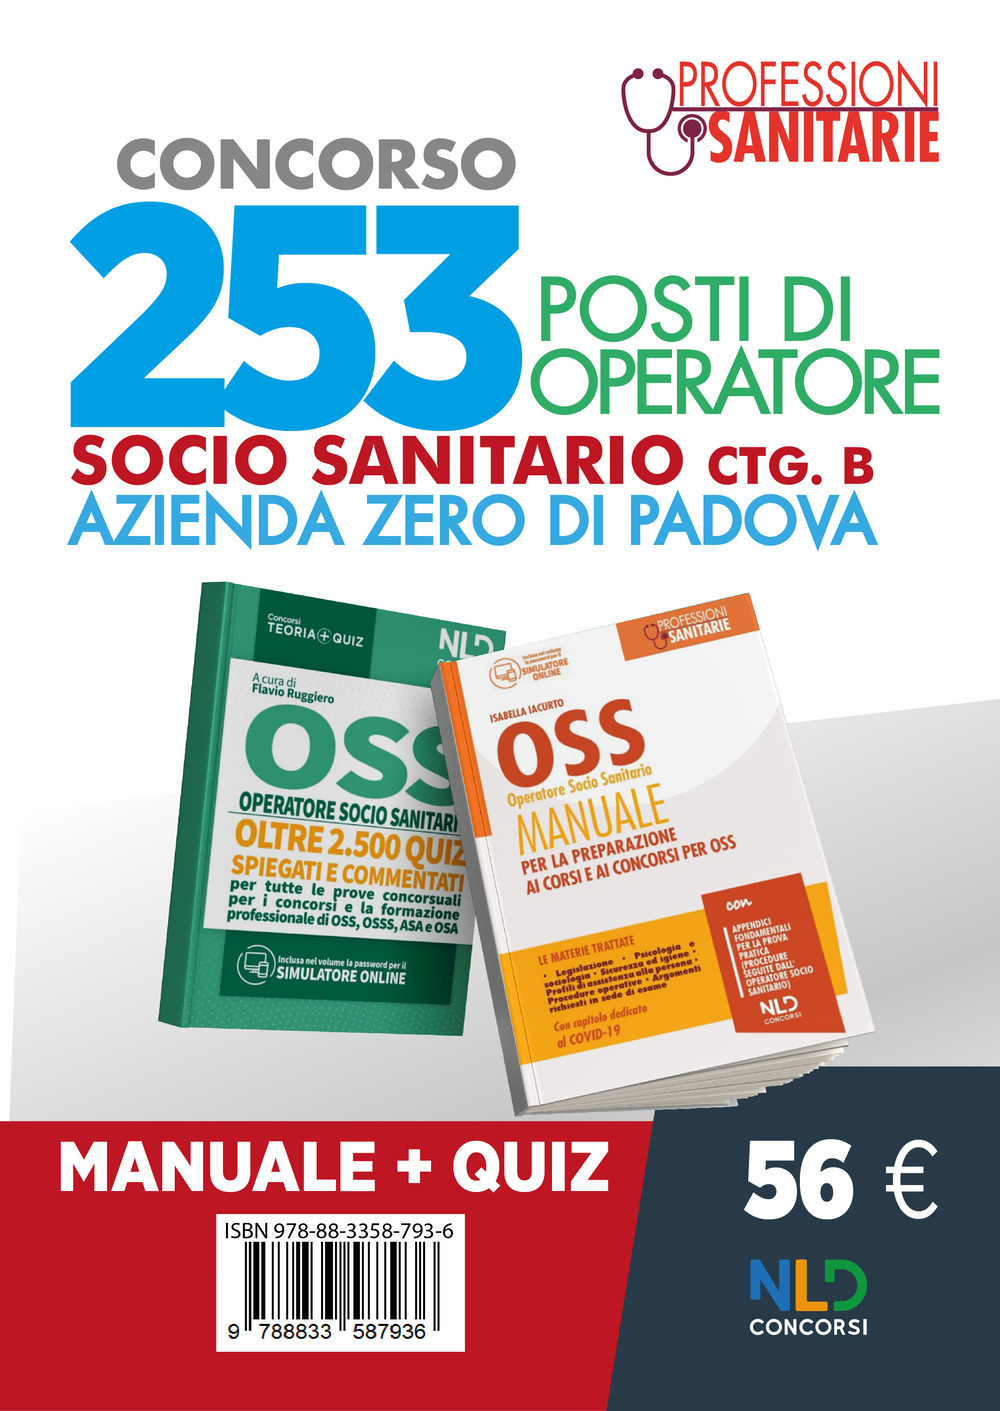 Image of Concorso 253 OSS Azienda Zero Padova. Manuale completo + quiz per il concorso